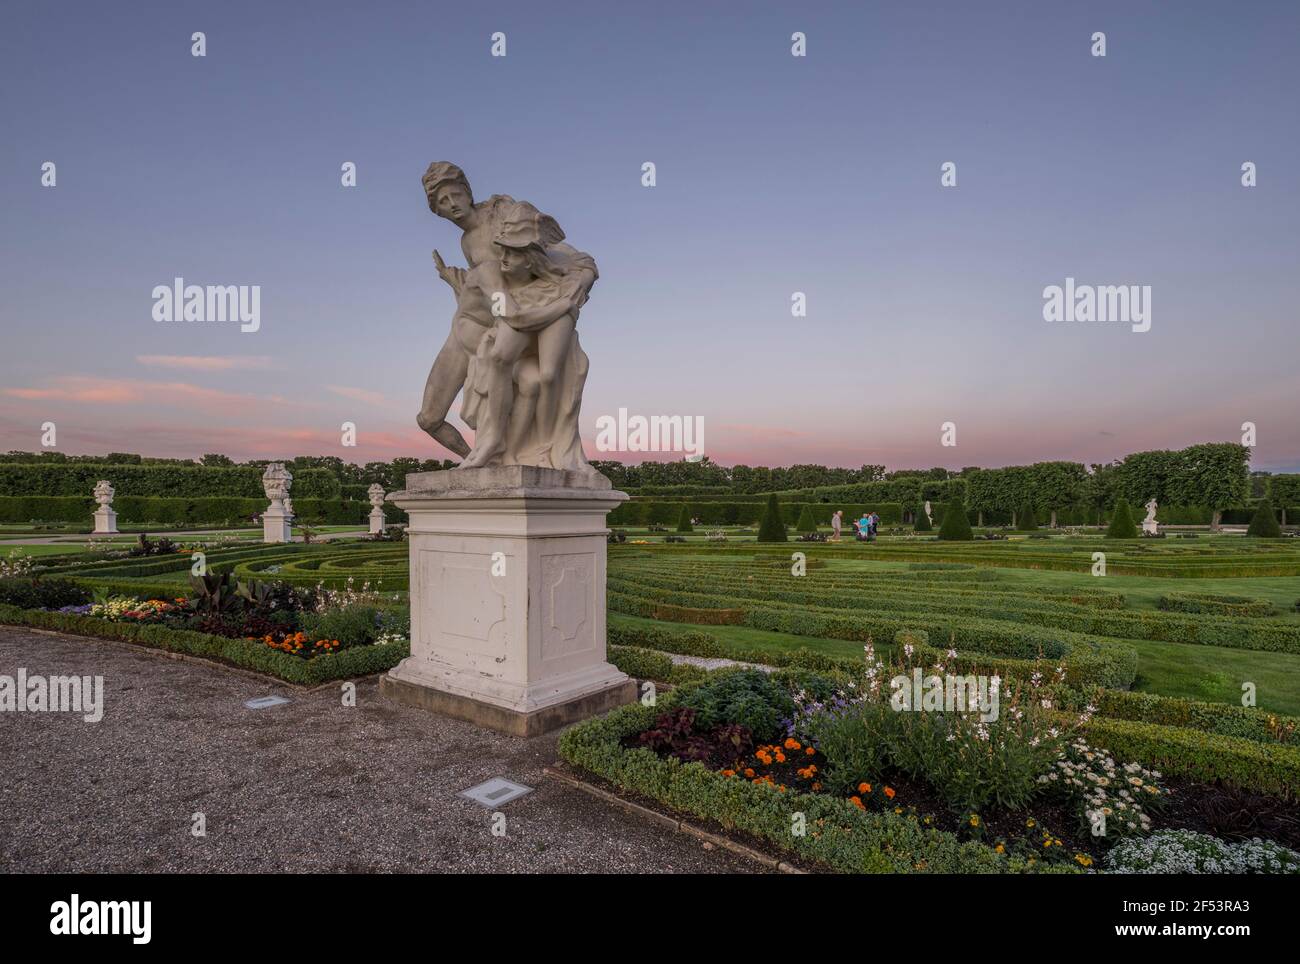 Geografia / viaggio, Germania, bassa Sassonia, Hannover, la statua 'Merkur & Psyche' dei giardini di Herrenhausen in serata, proprietà-liberata Foto Stock